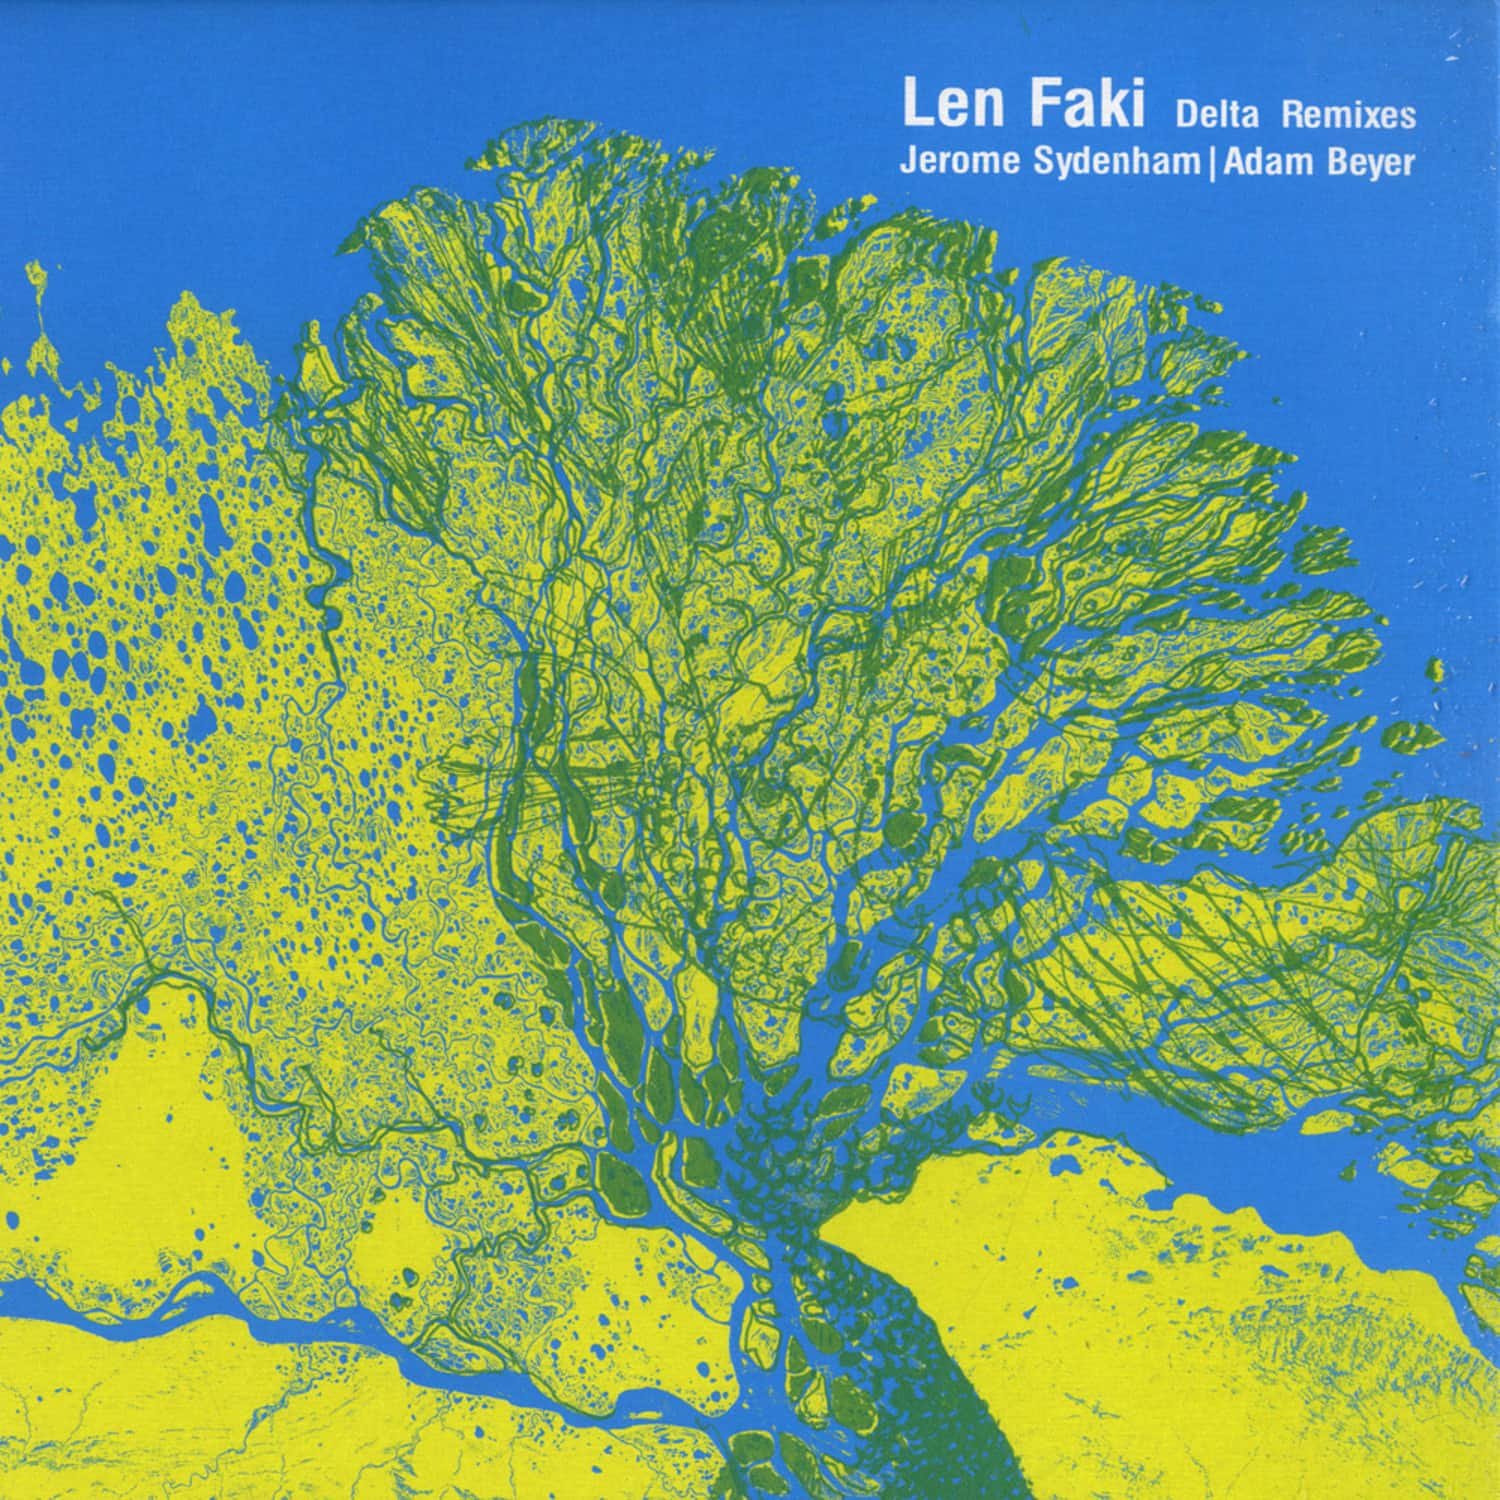 Len Faki - RAINBOW DELTA REMIXES